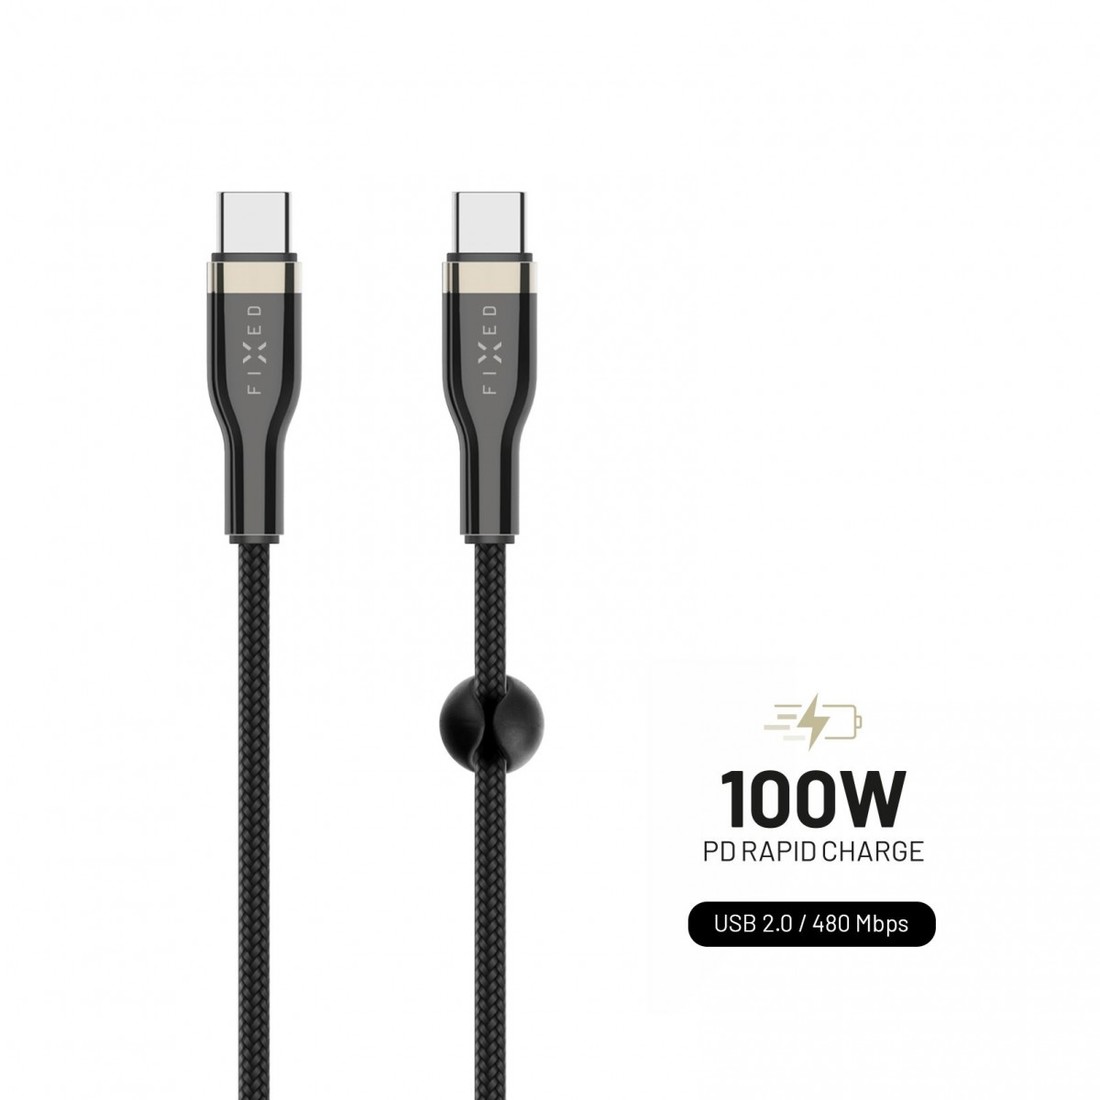 Dlouhý nabíjecí a datový opletený kabel FIXED s konektory USB-C/USB-C a podporou PD, 2m, USB 2.0, 100W, černý